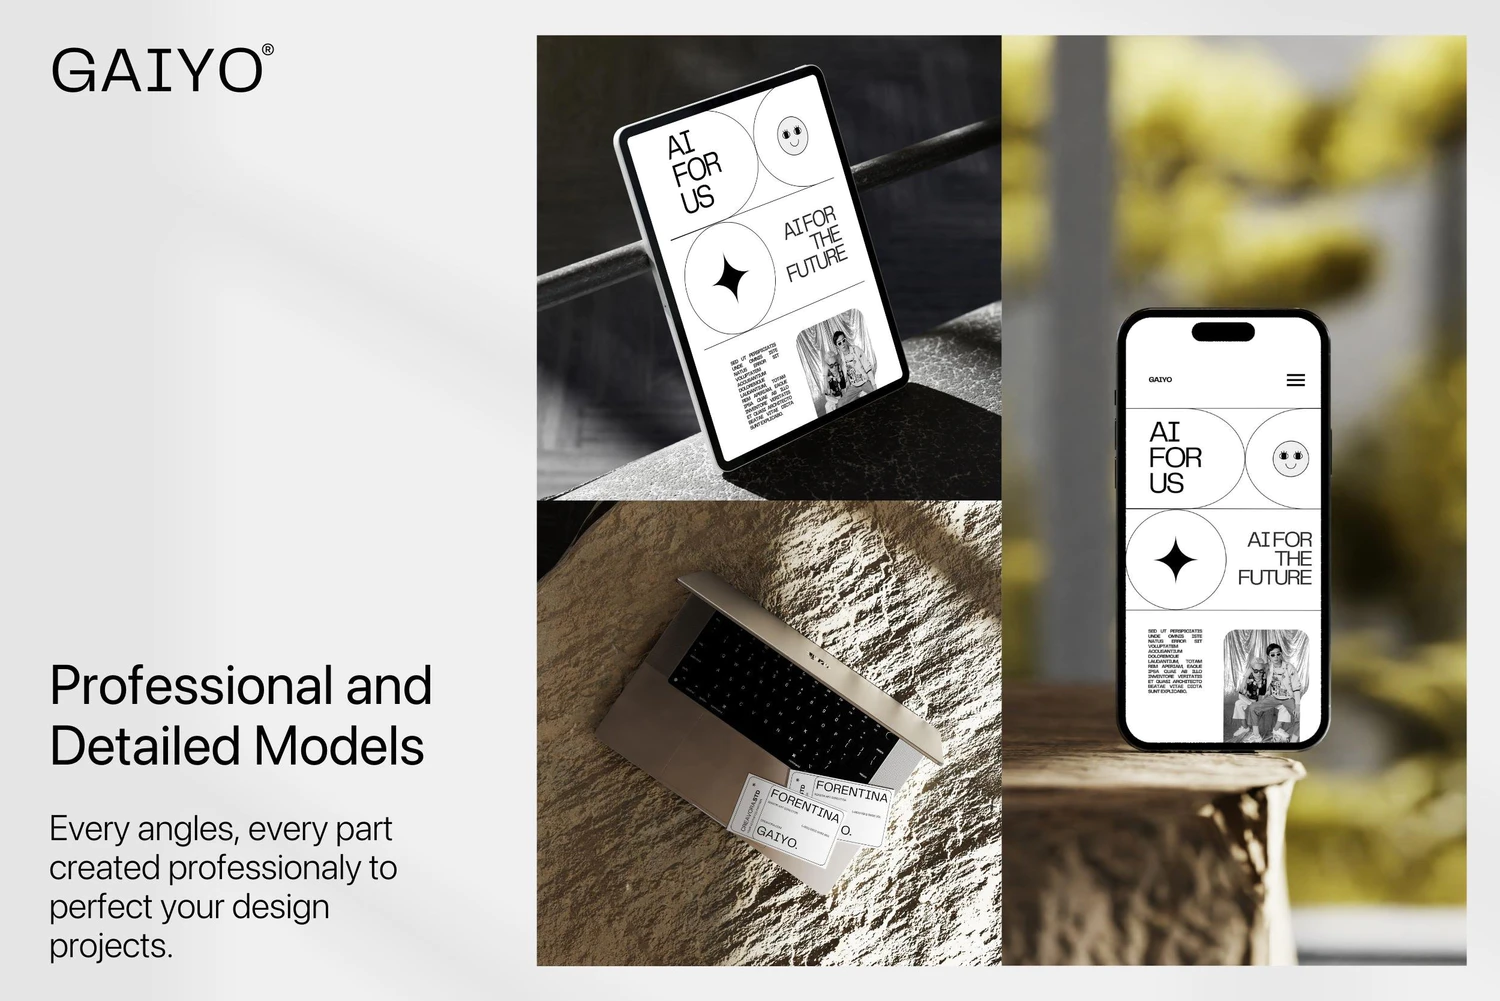 5111 时尚室内场景的苹果电子设备ui设计展示psd样机素材 Gaiyo – Industrial Mockup Bundle@GOOODME.COM